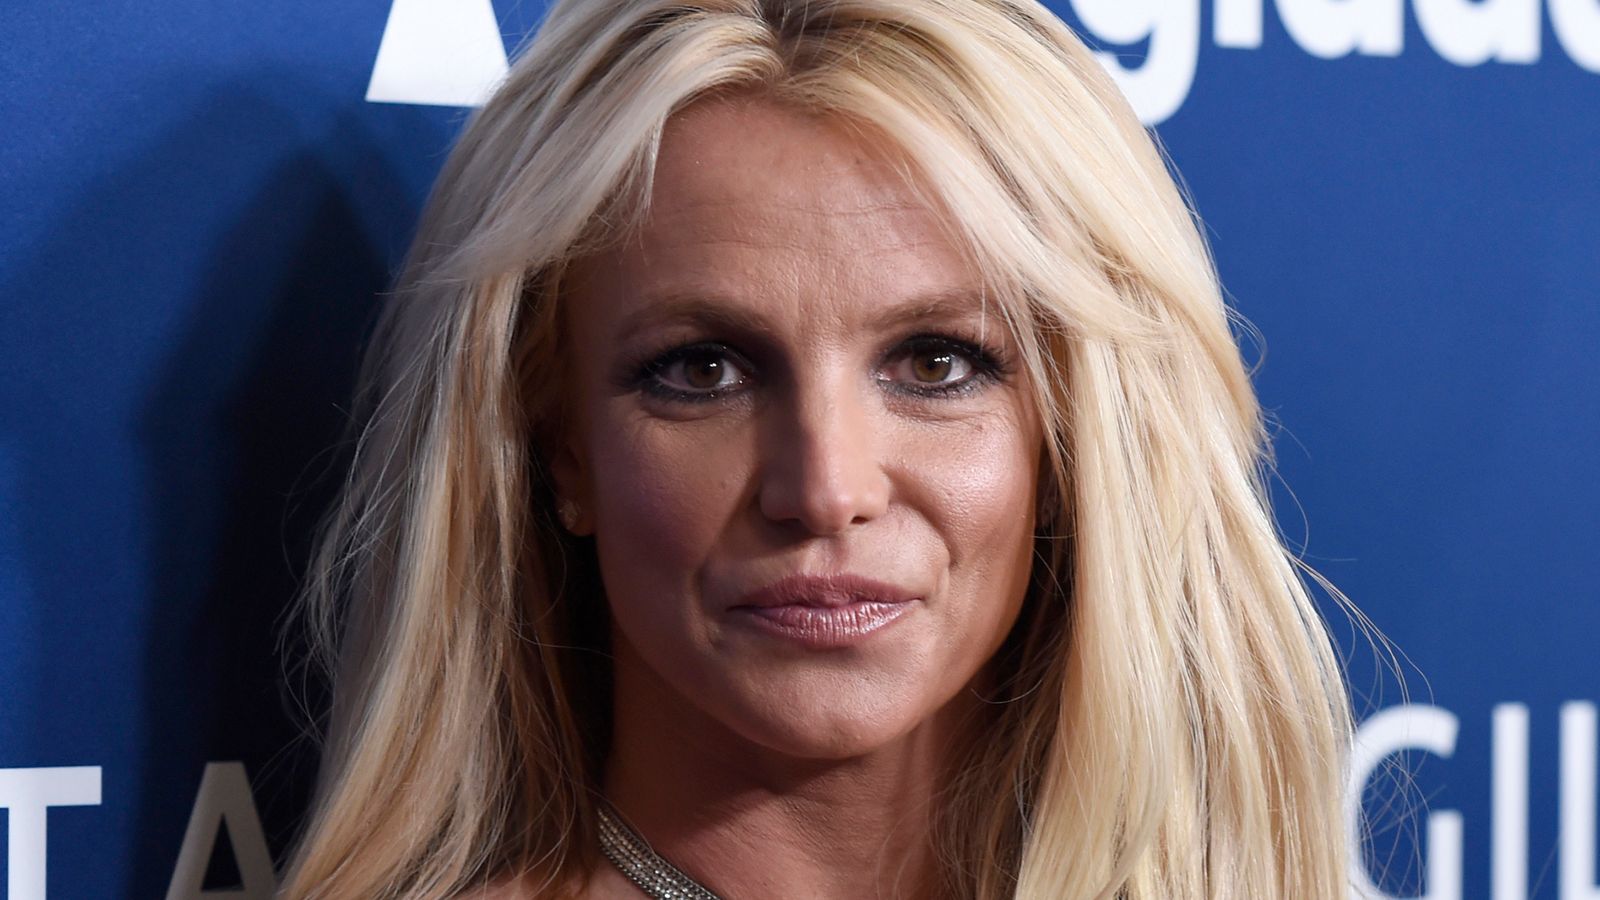 Konservatori Britney Spears berakhir setelah 13 tahun |  Berita Ent & Seni